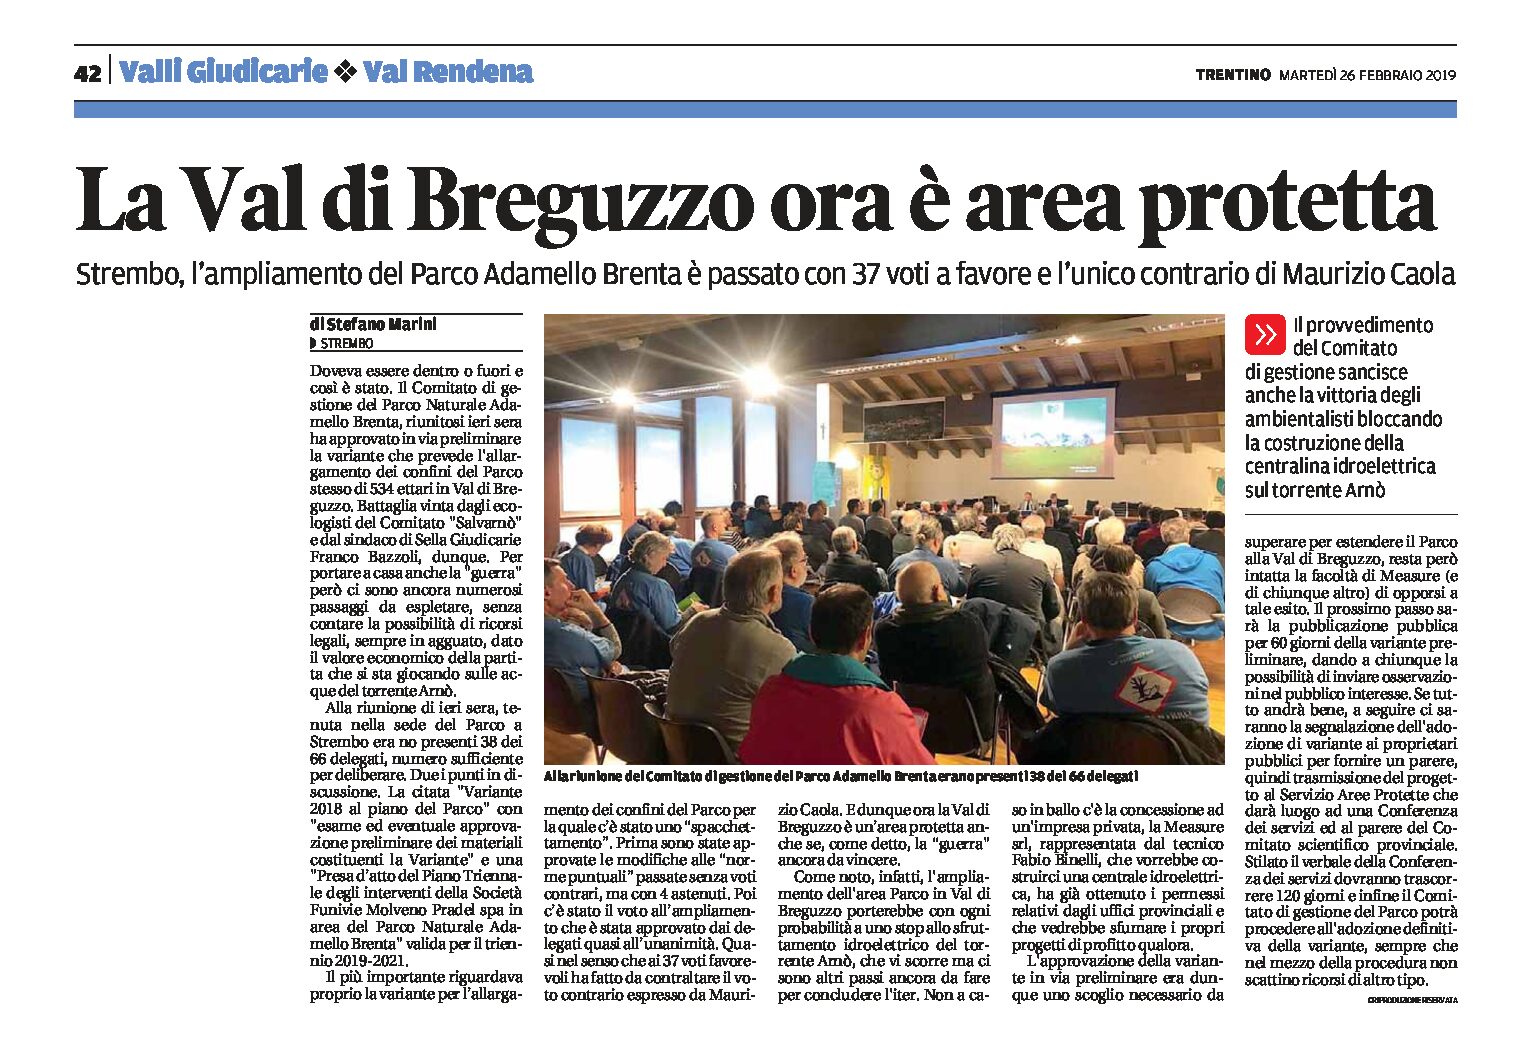 Parco Adamello Brenta: la val di Breguzzo ora è area protetta